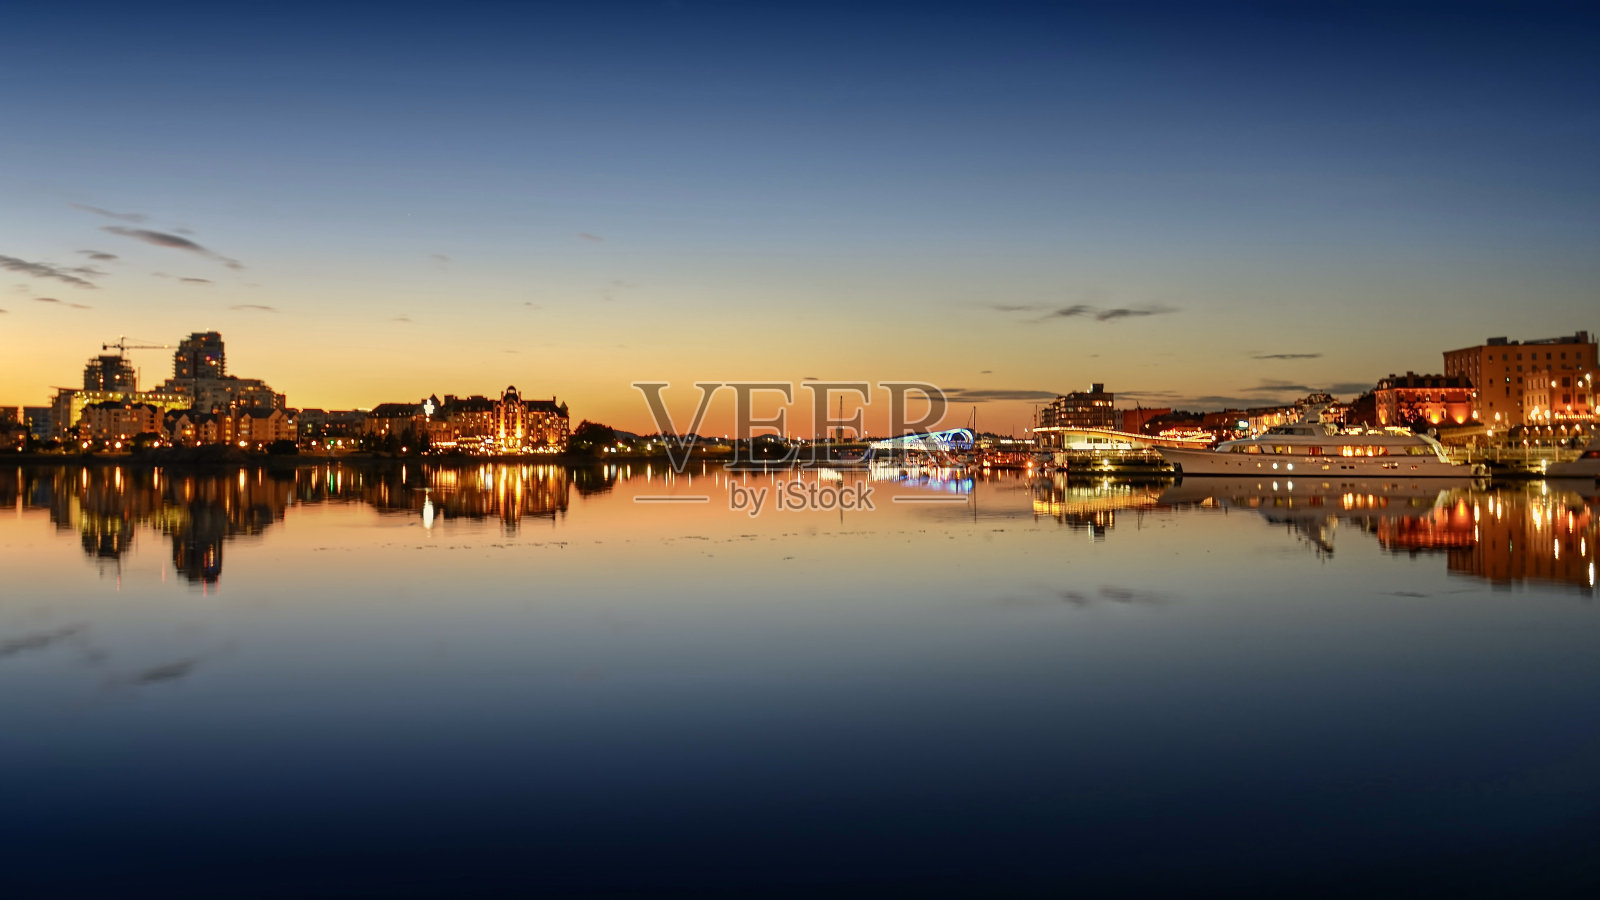 夕阳下的维多利亚内港照片摄影图片